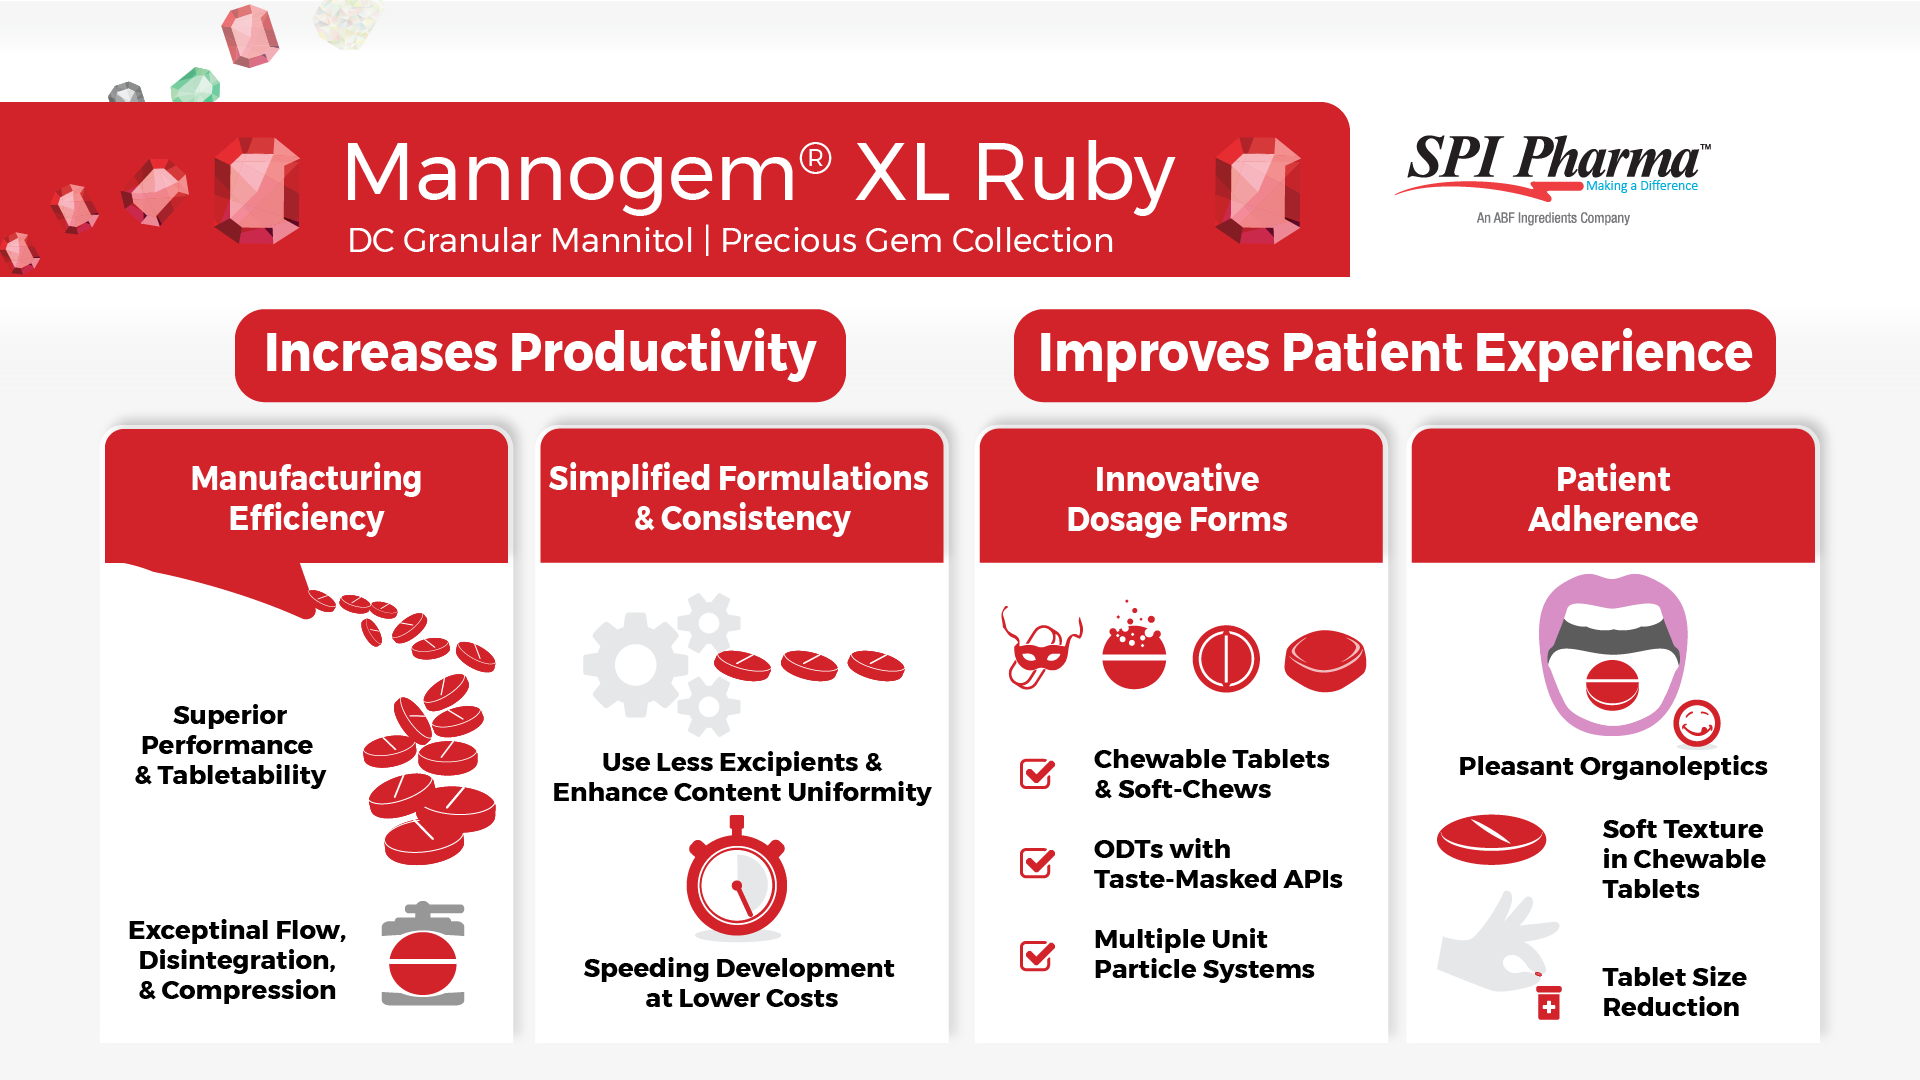 Mannogem® XL Ruby, DC Granular Mannitol